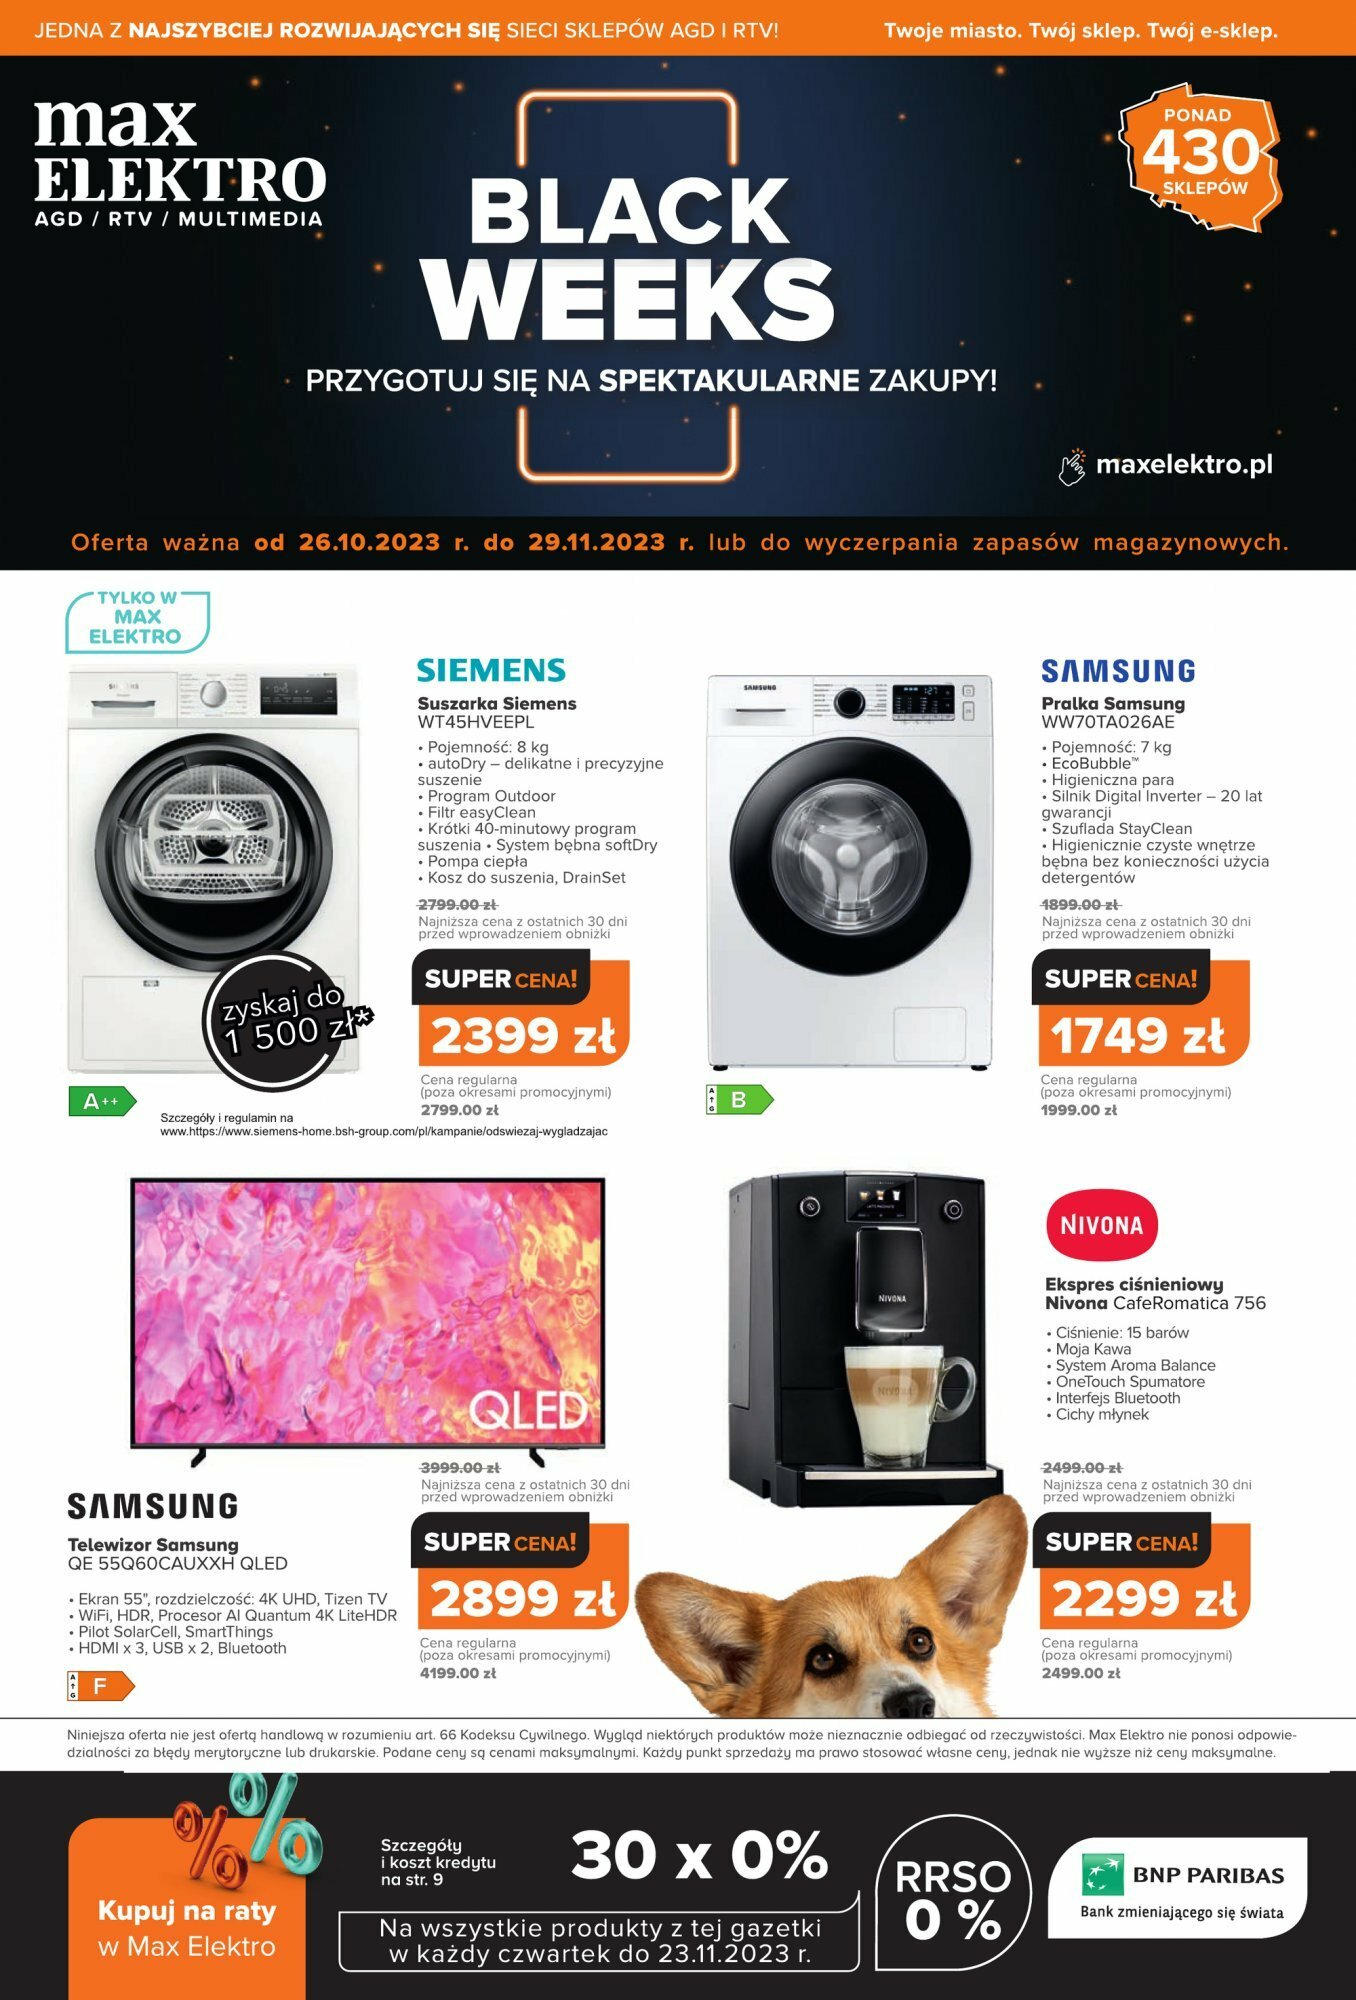 Max elektro Black weeks od (26.10.2023 - 29.11.2023) | Strona: 1 | Produkty: Kawa, USB, Młynek, Kosz